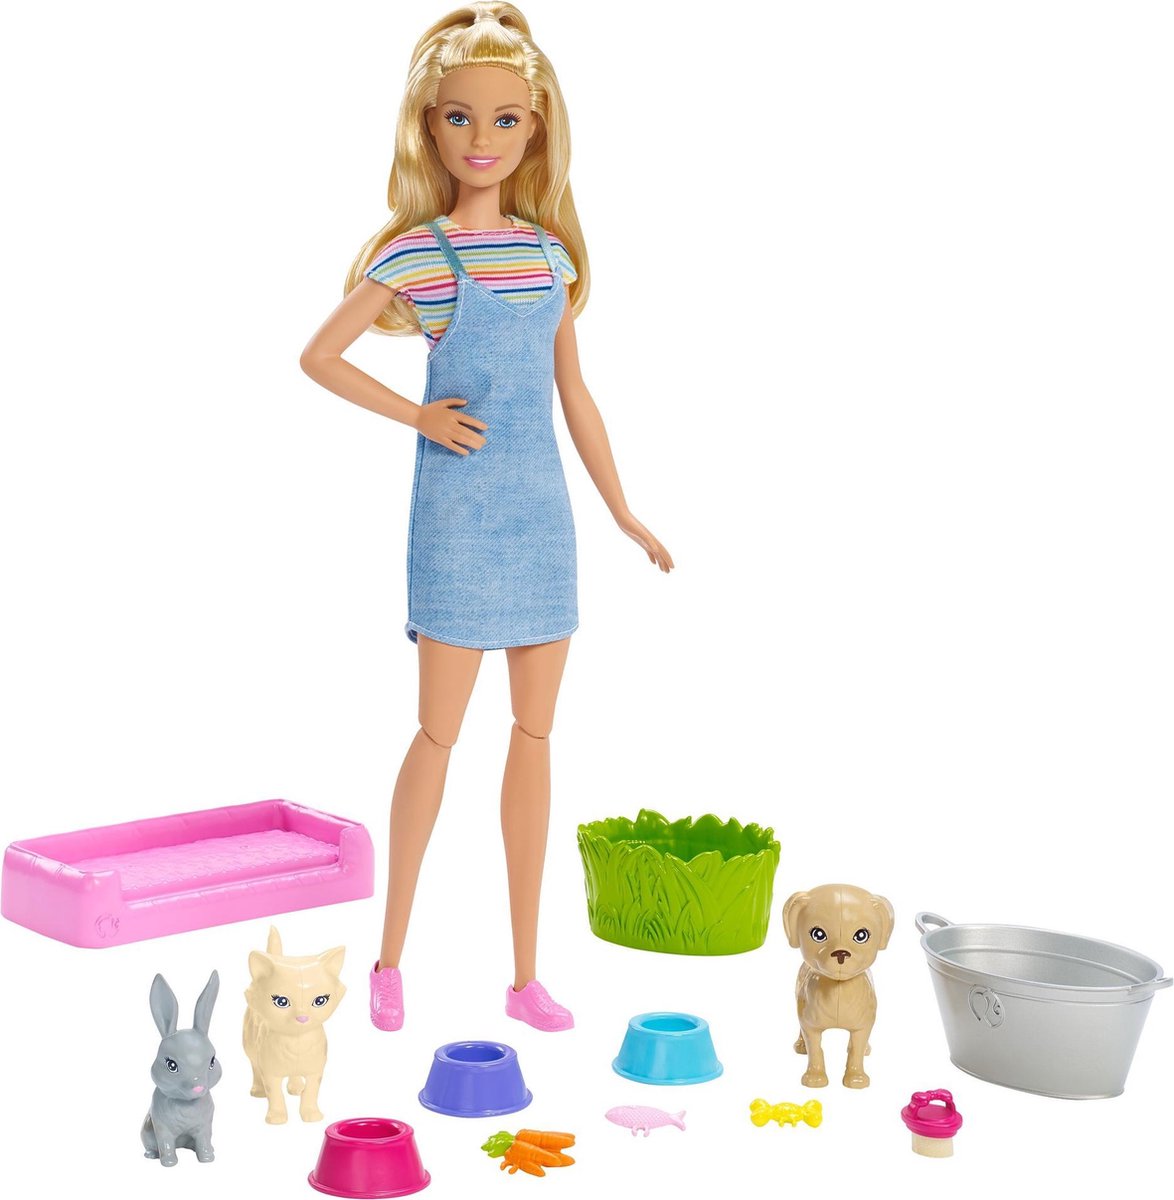 Speelset - Barbiepop | bol.com